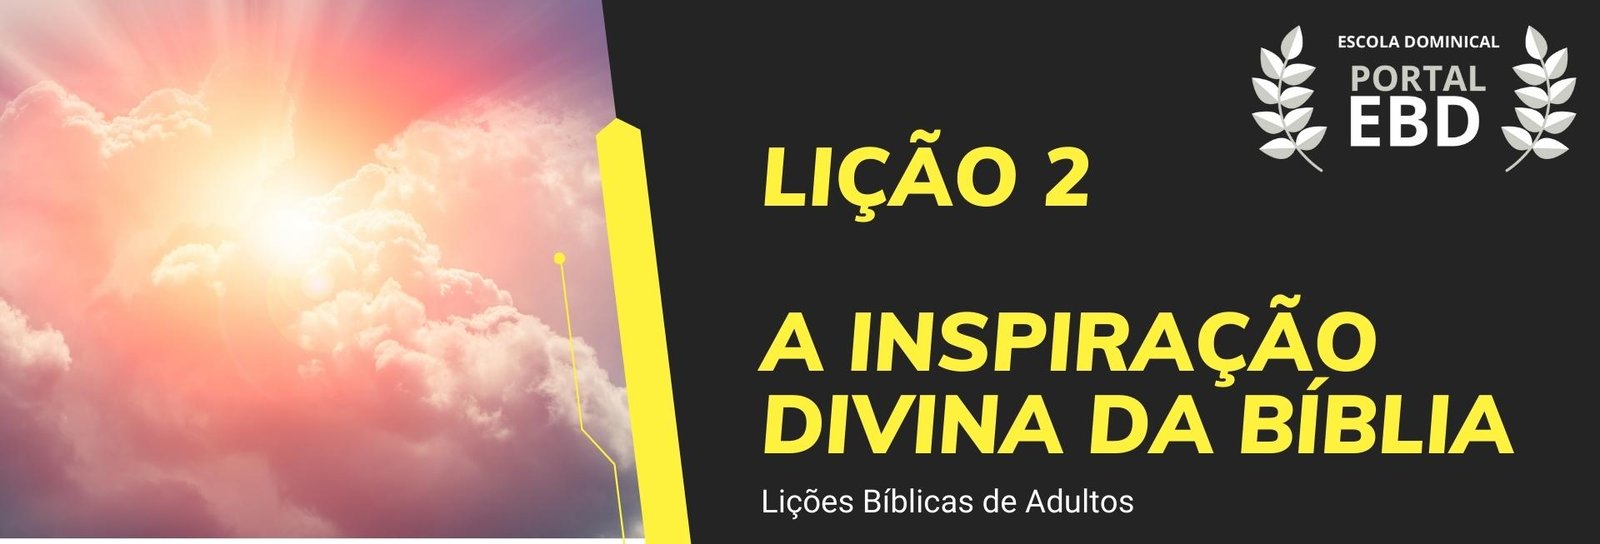 Lição 2 - A inspiração divina da Bíblia I